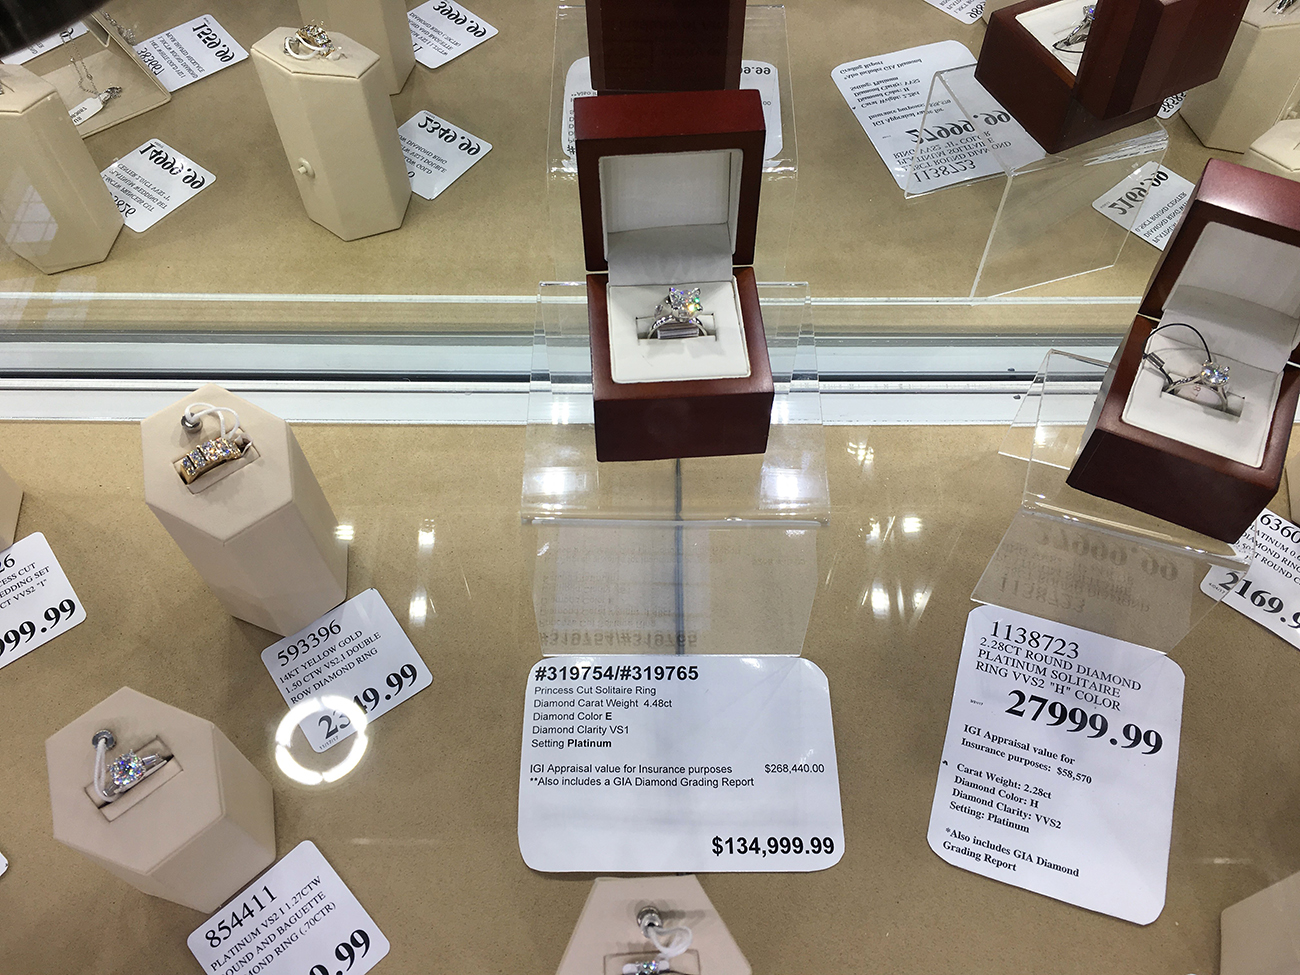 Uma fotografia mostra uma vitrine de joias cheia de anéis de diamante. Alguns dos anéis custam mais de 130.000 dólares.